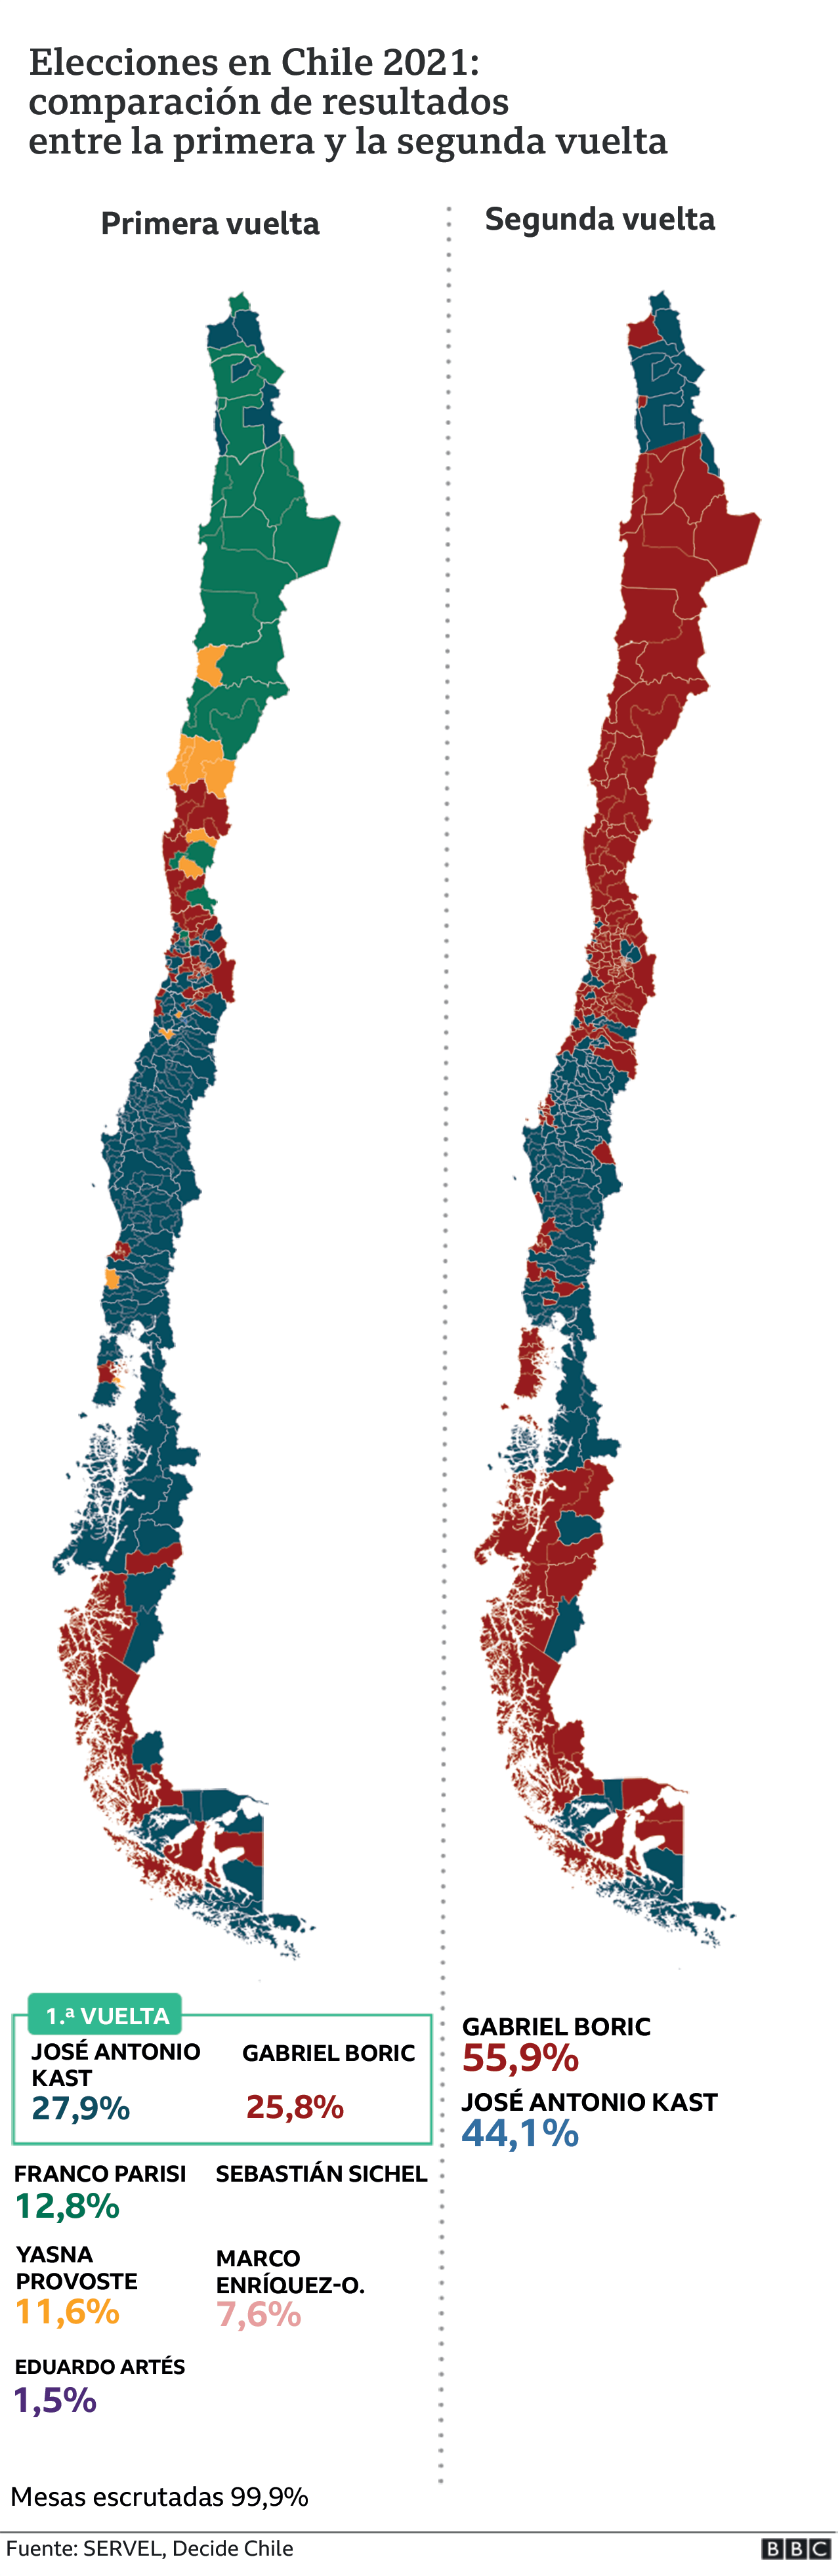 Comparación resultados primera y segunda vuelta elecciones Chile 2021.